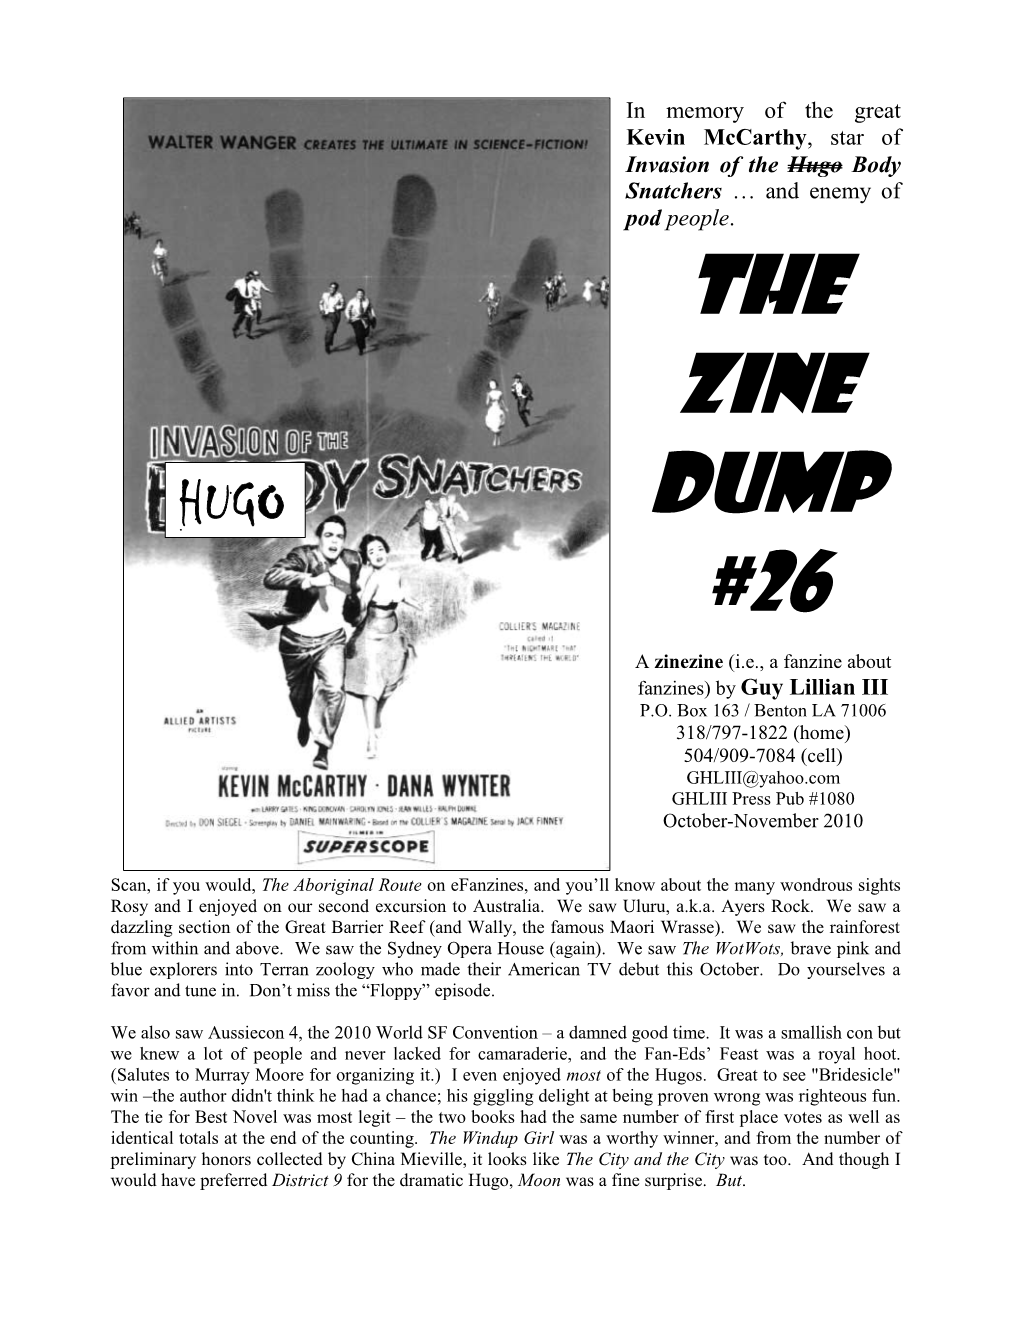 The Zine Dump